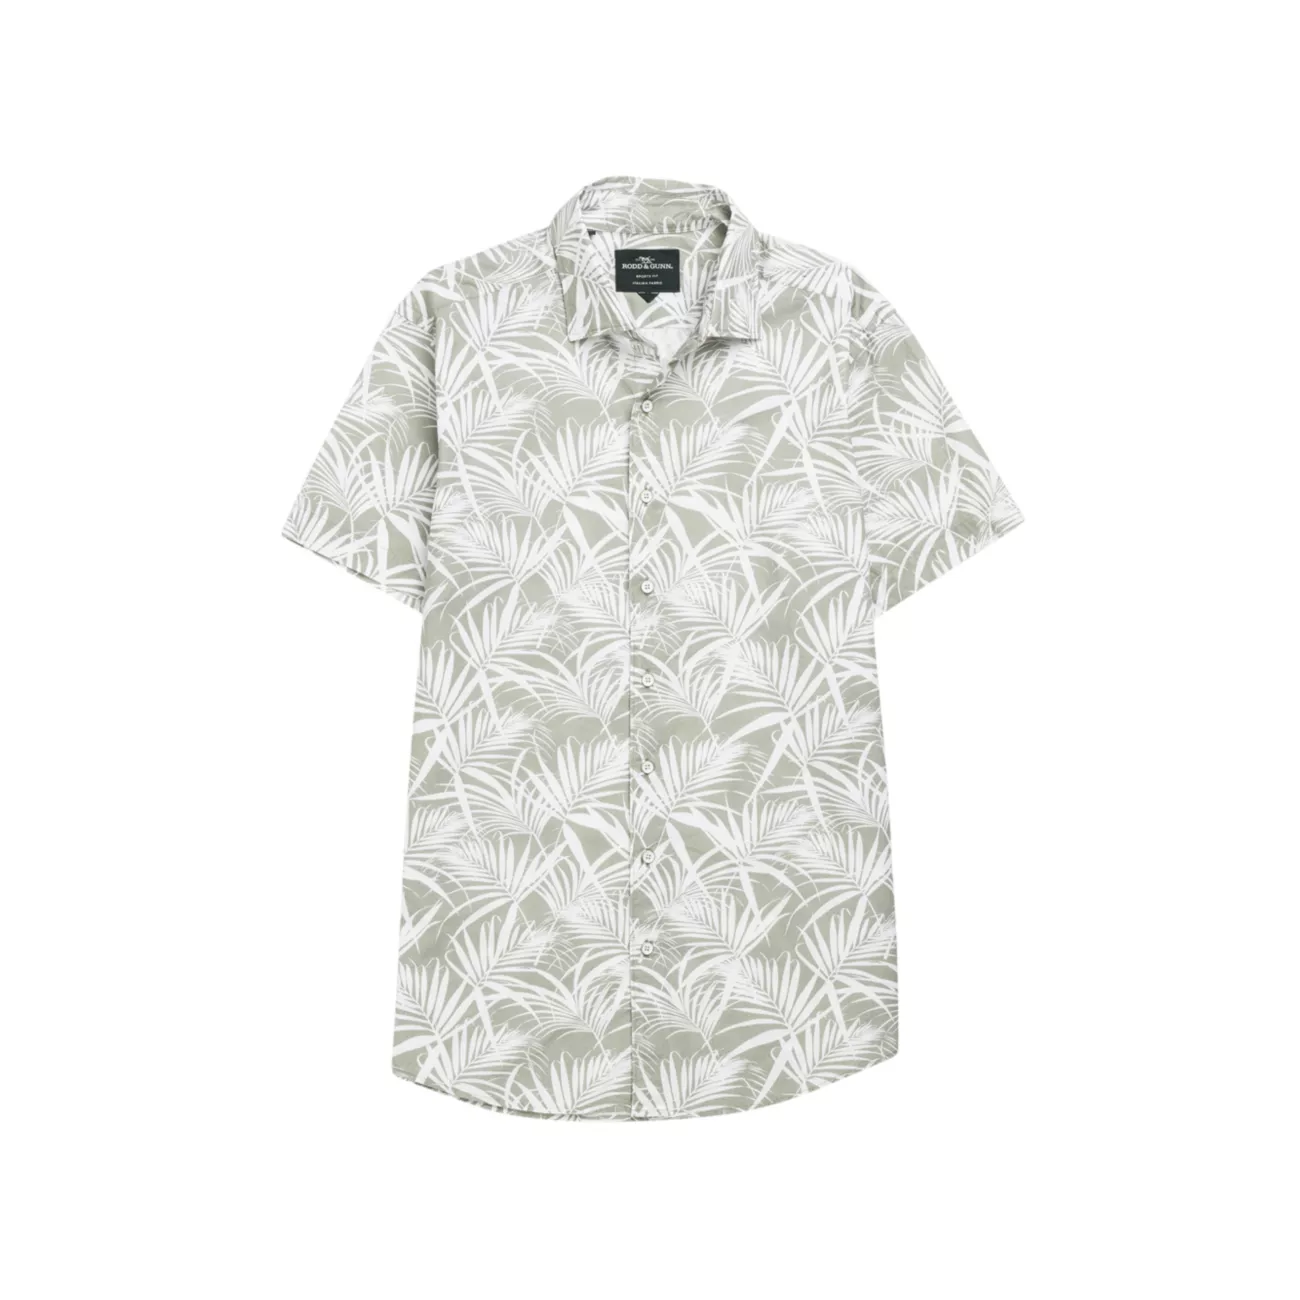 Рубашка с короткими рукавами и принтом пальмовых листьев Montcalm RODD AND GUNN